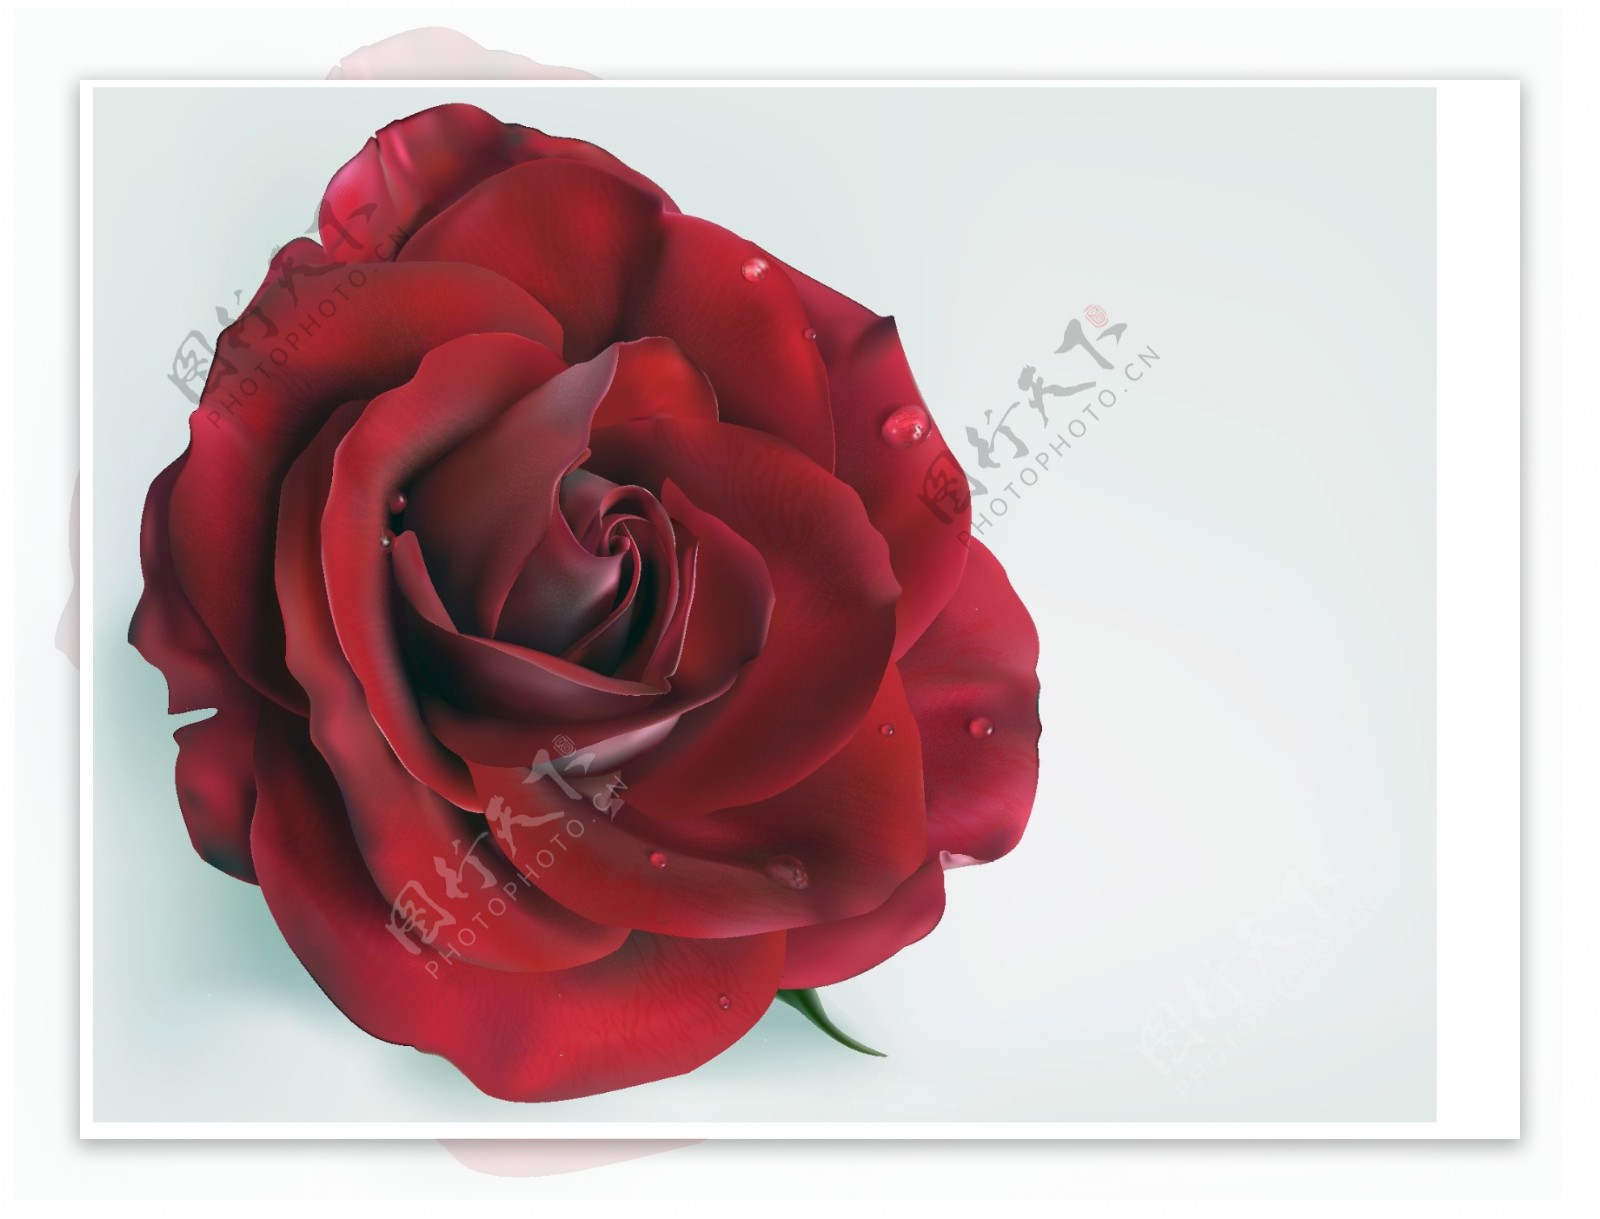 滴鲜红的玫瑰花矢量素材